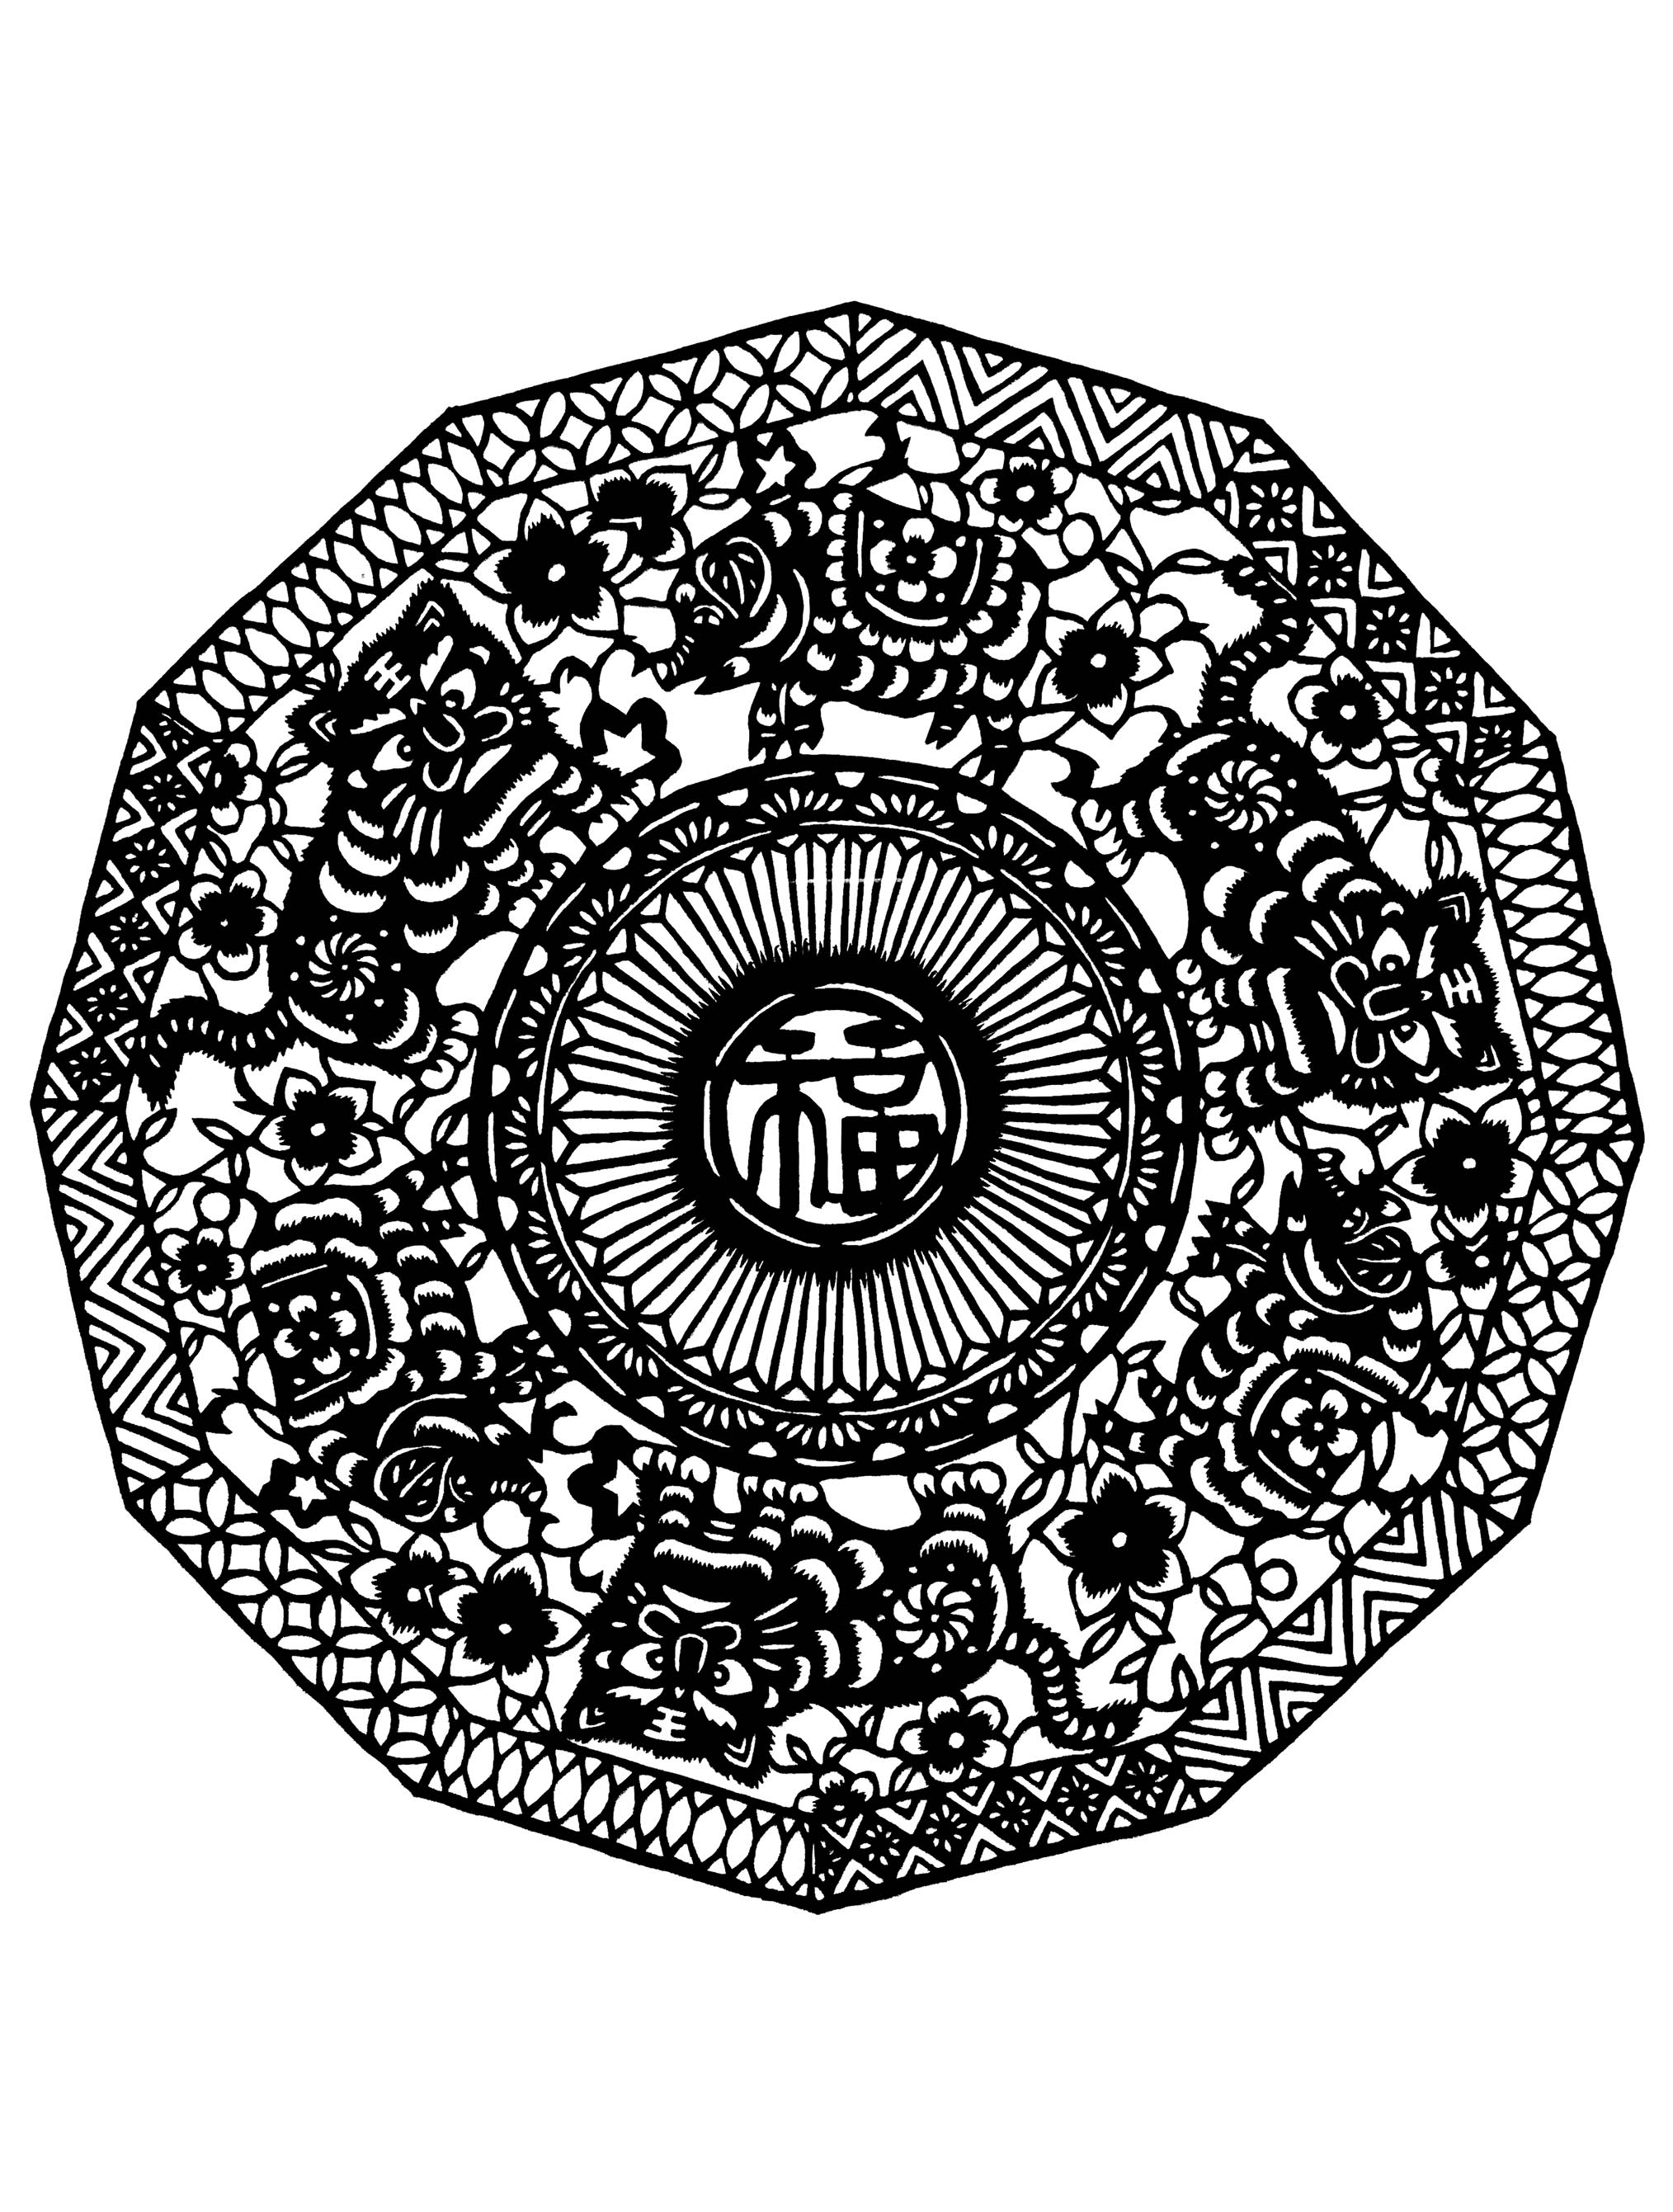 Mandala mit chinesischen Mustern, Zeichnungen und Symbolen. Dieses Mandala ist recht schwierig zu kolorieren. Es ist perfekt, wenn Sie gerne kleine Bereiche kolorieren und verschiedene Details mögen.